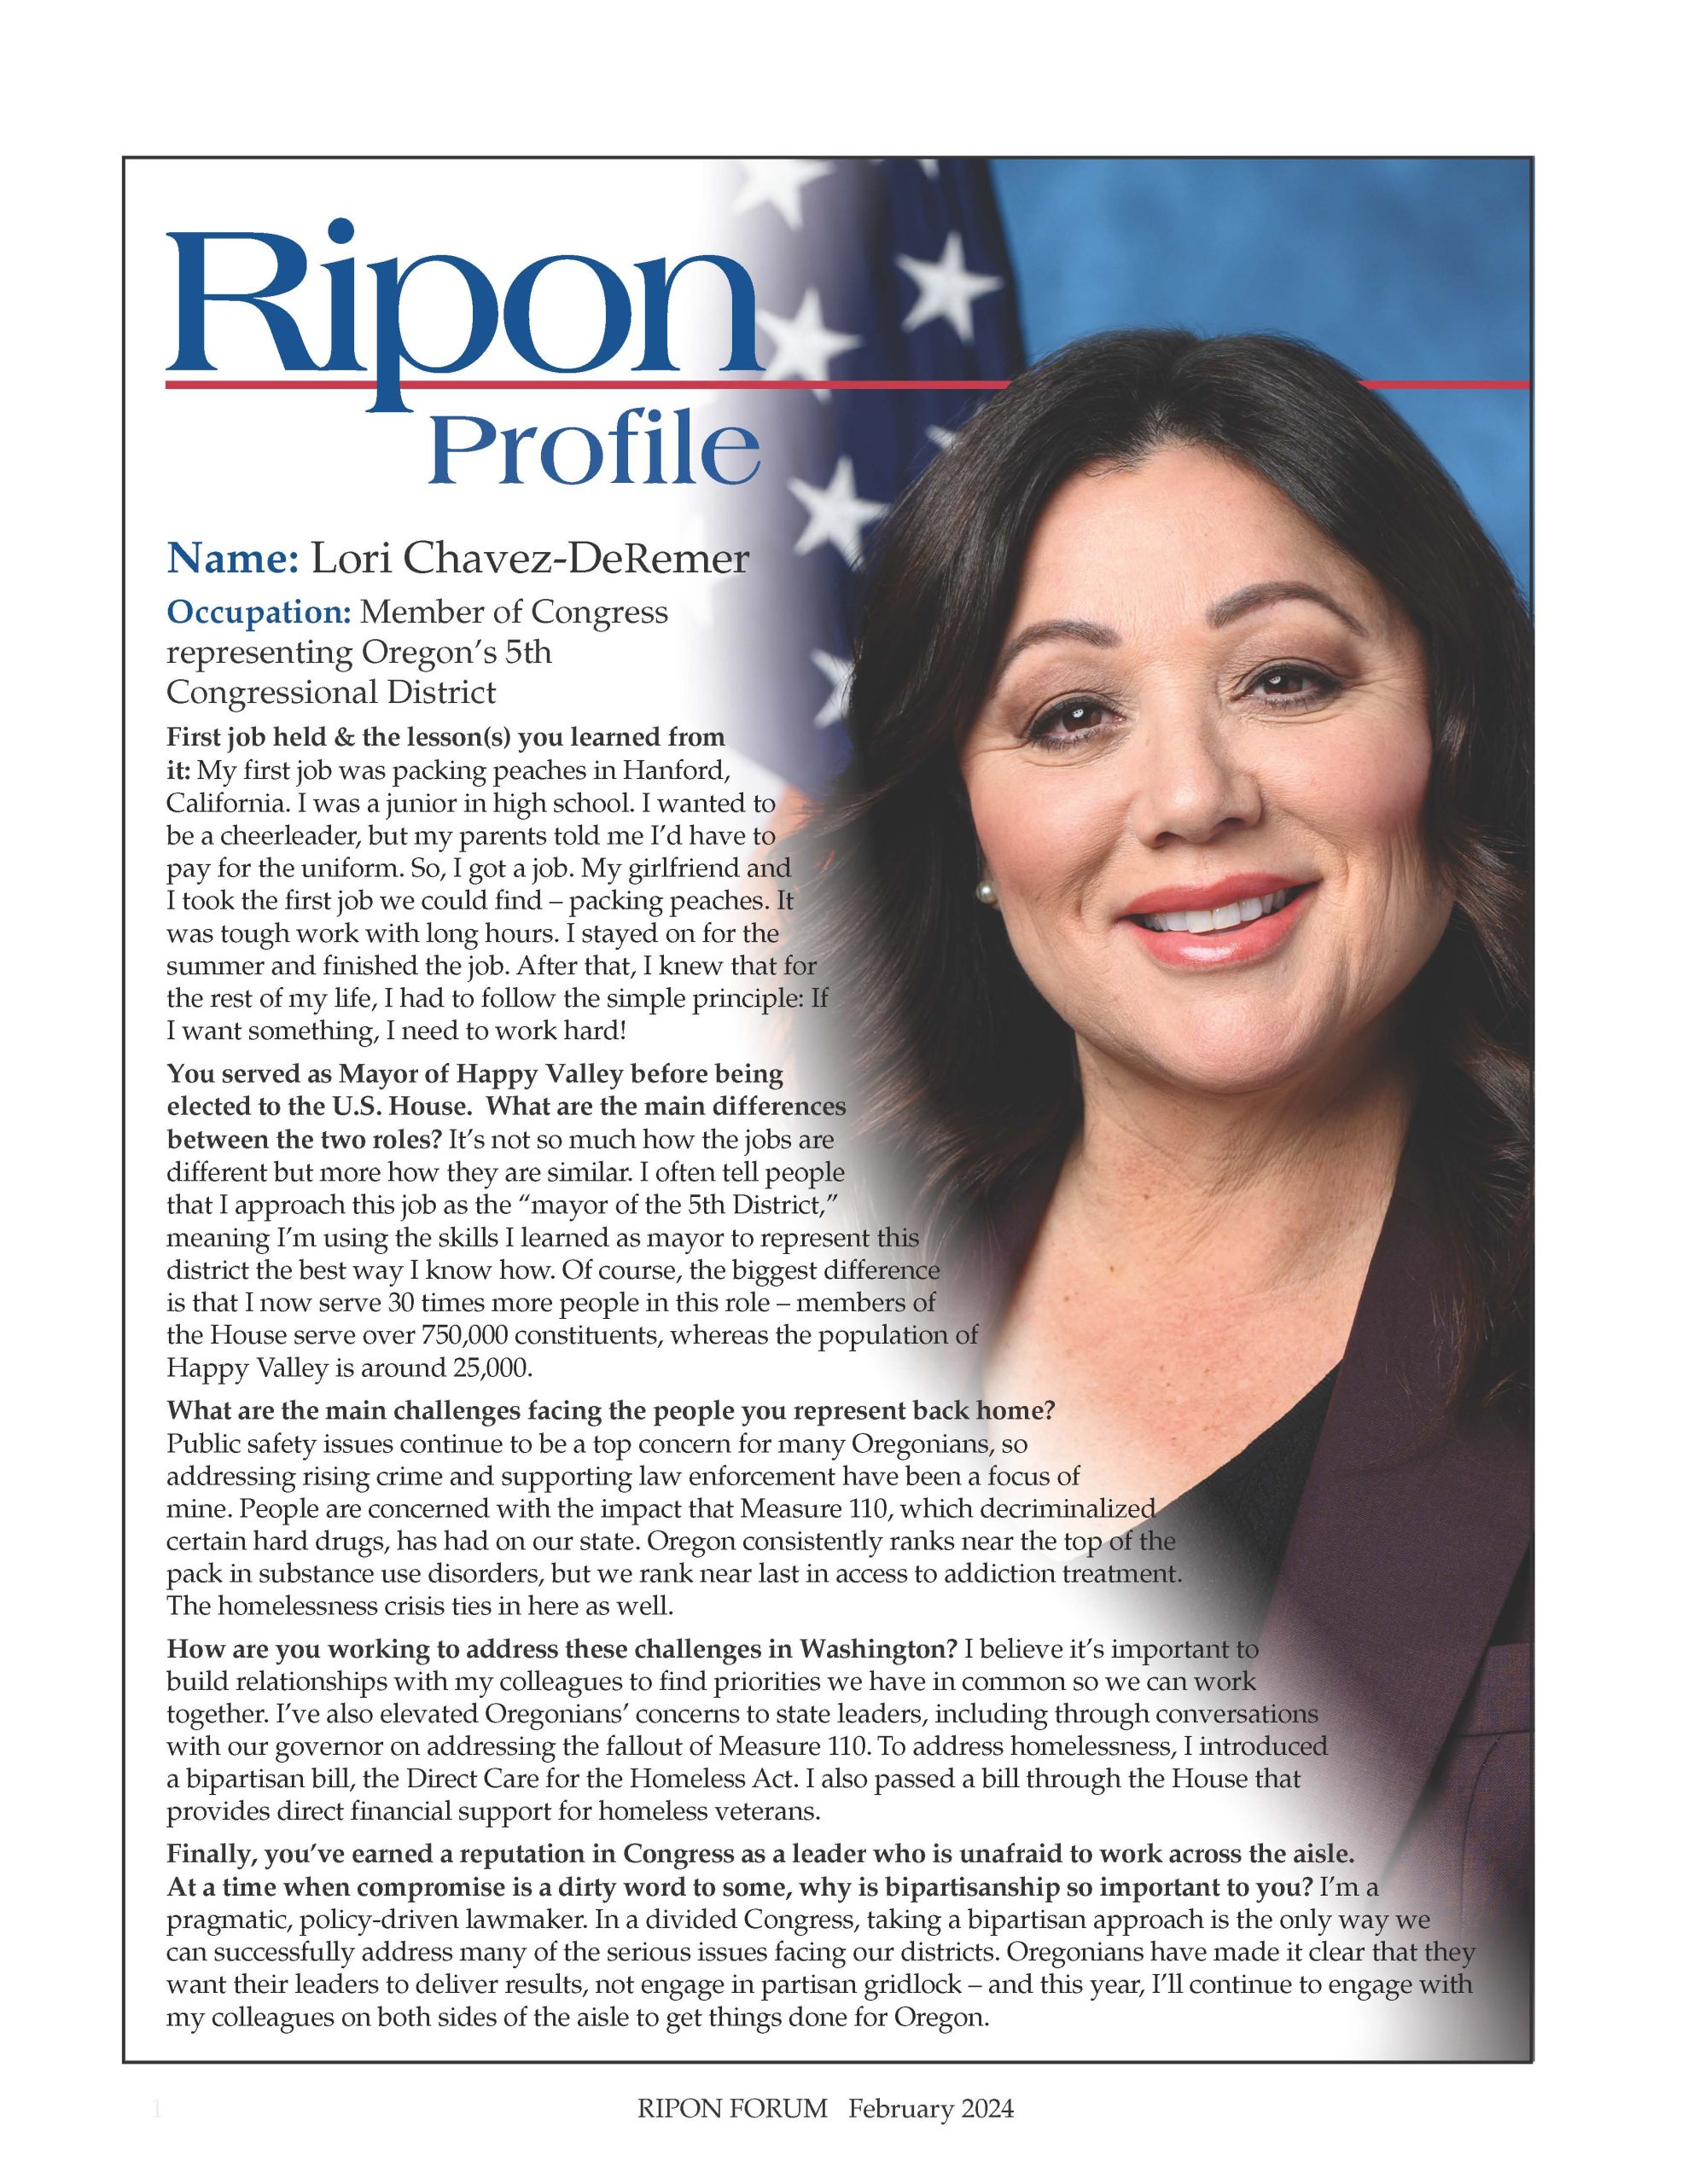 Ripon Profile of Lori Chavez-DeRemer